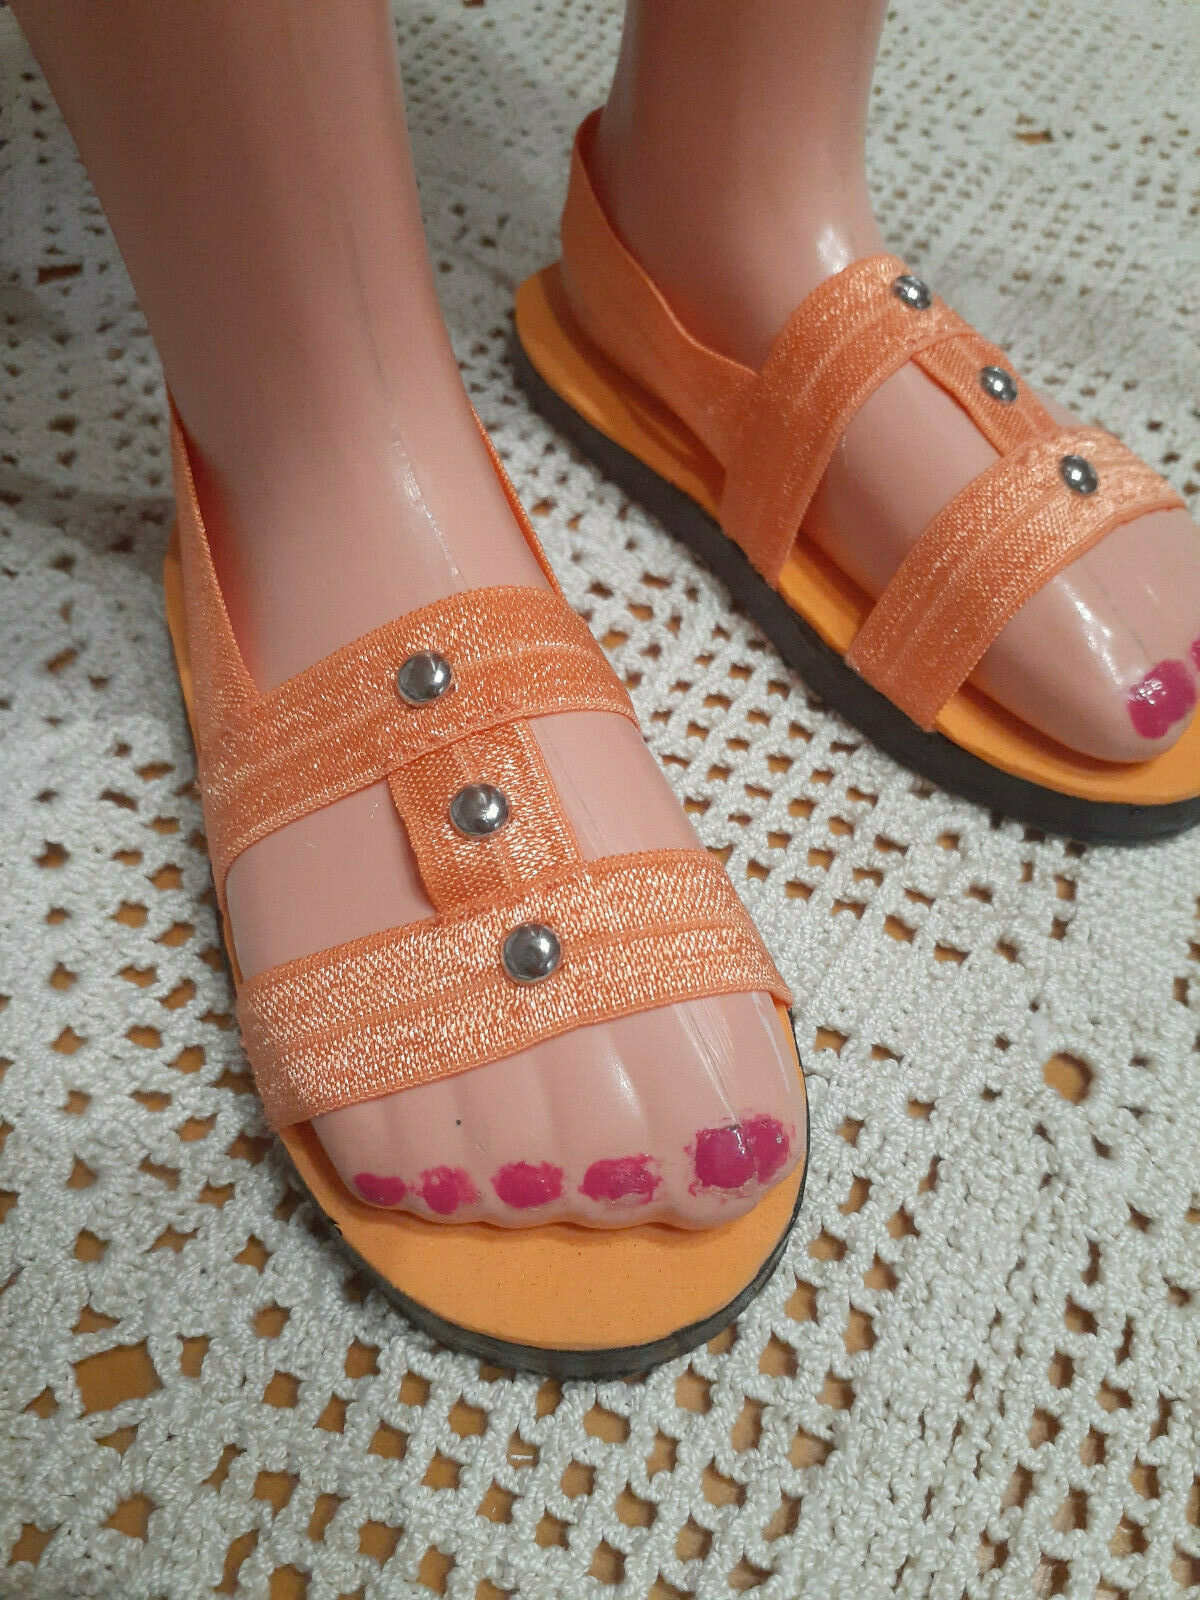 36" My Size Barbie Orange Sandals Shoes